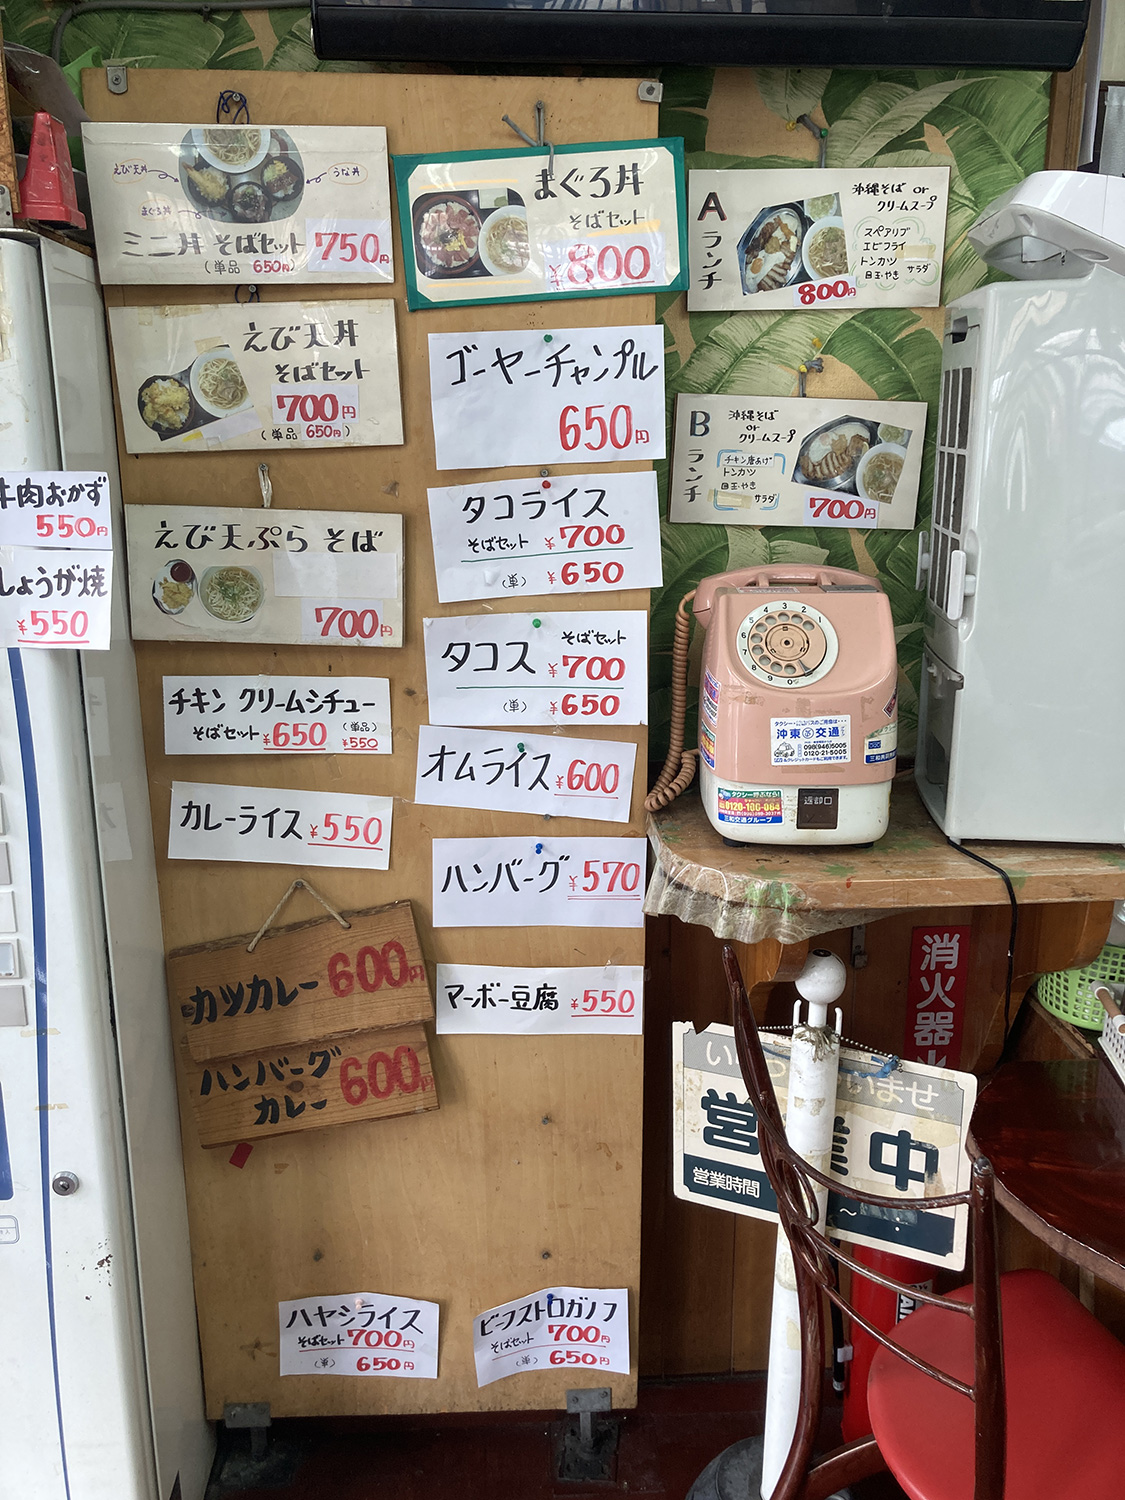 小さなどんぶり３つがセットになった『ミニ丼そばセット』も650円→750円となっています。